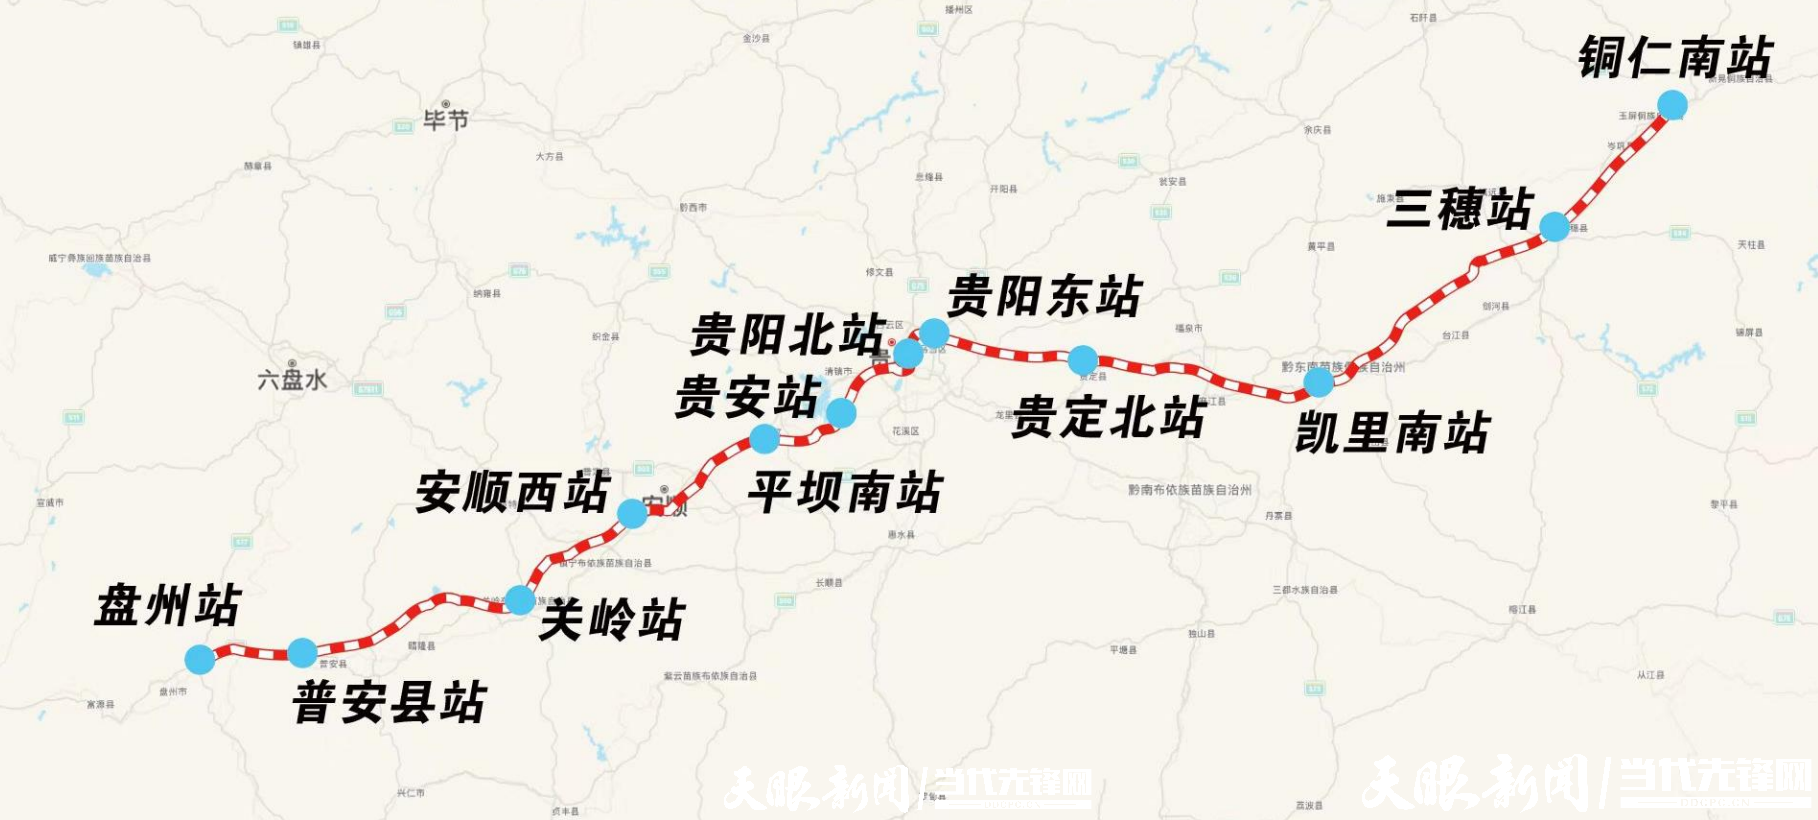 高铁与慢火车：贵州高原铁路协奏曲 - 当代先锋网 - 热播